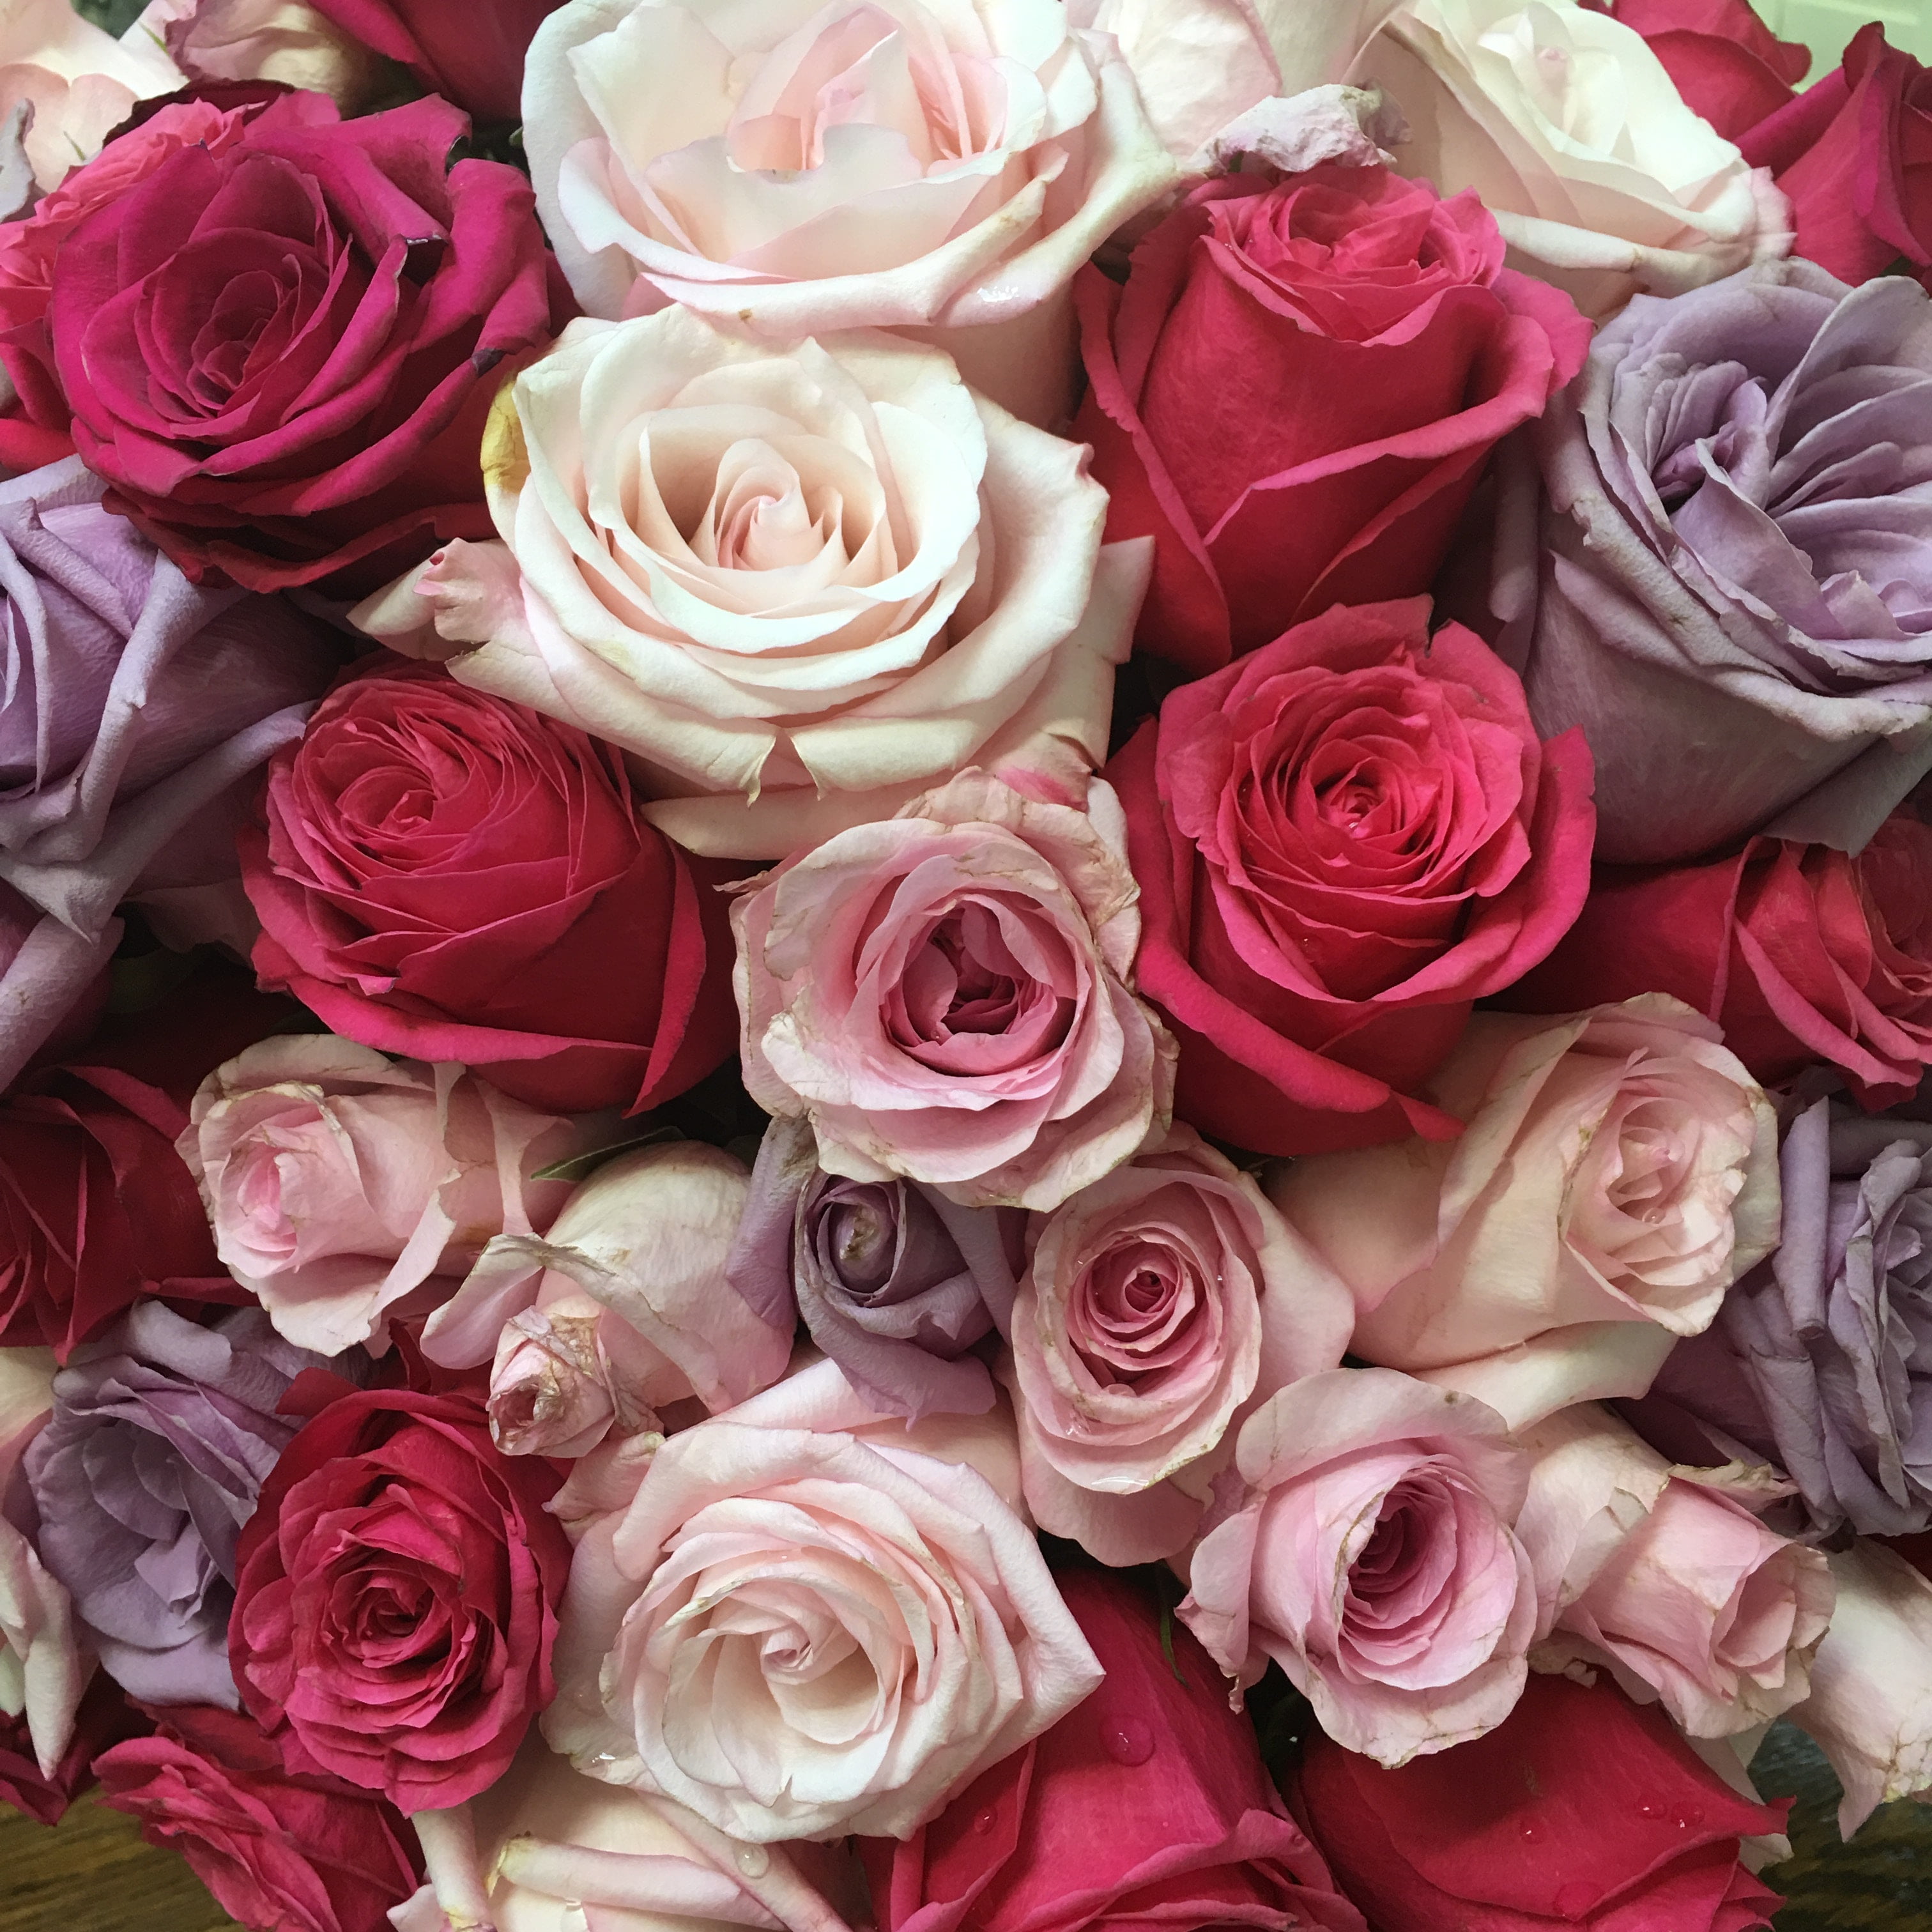 rosentapete hd,blume,rose,gartenrosen,rosa,schnittblumen